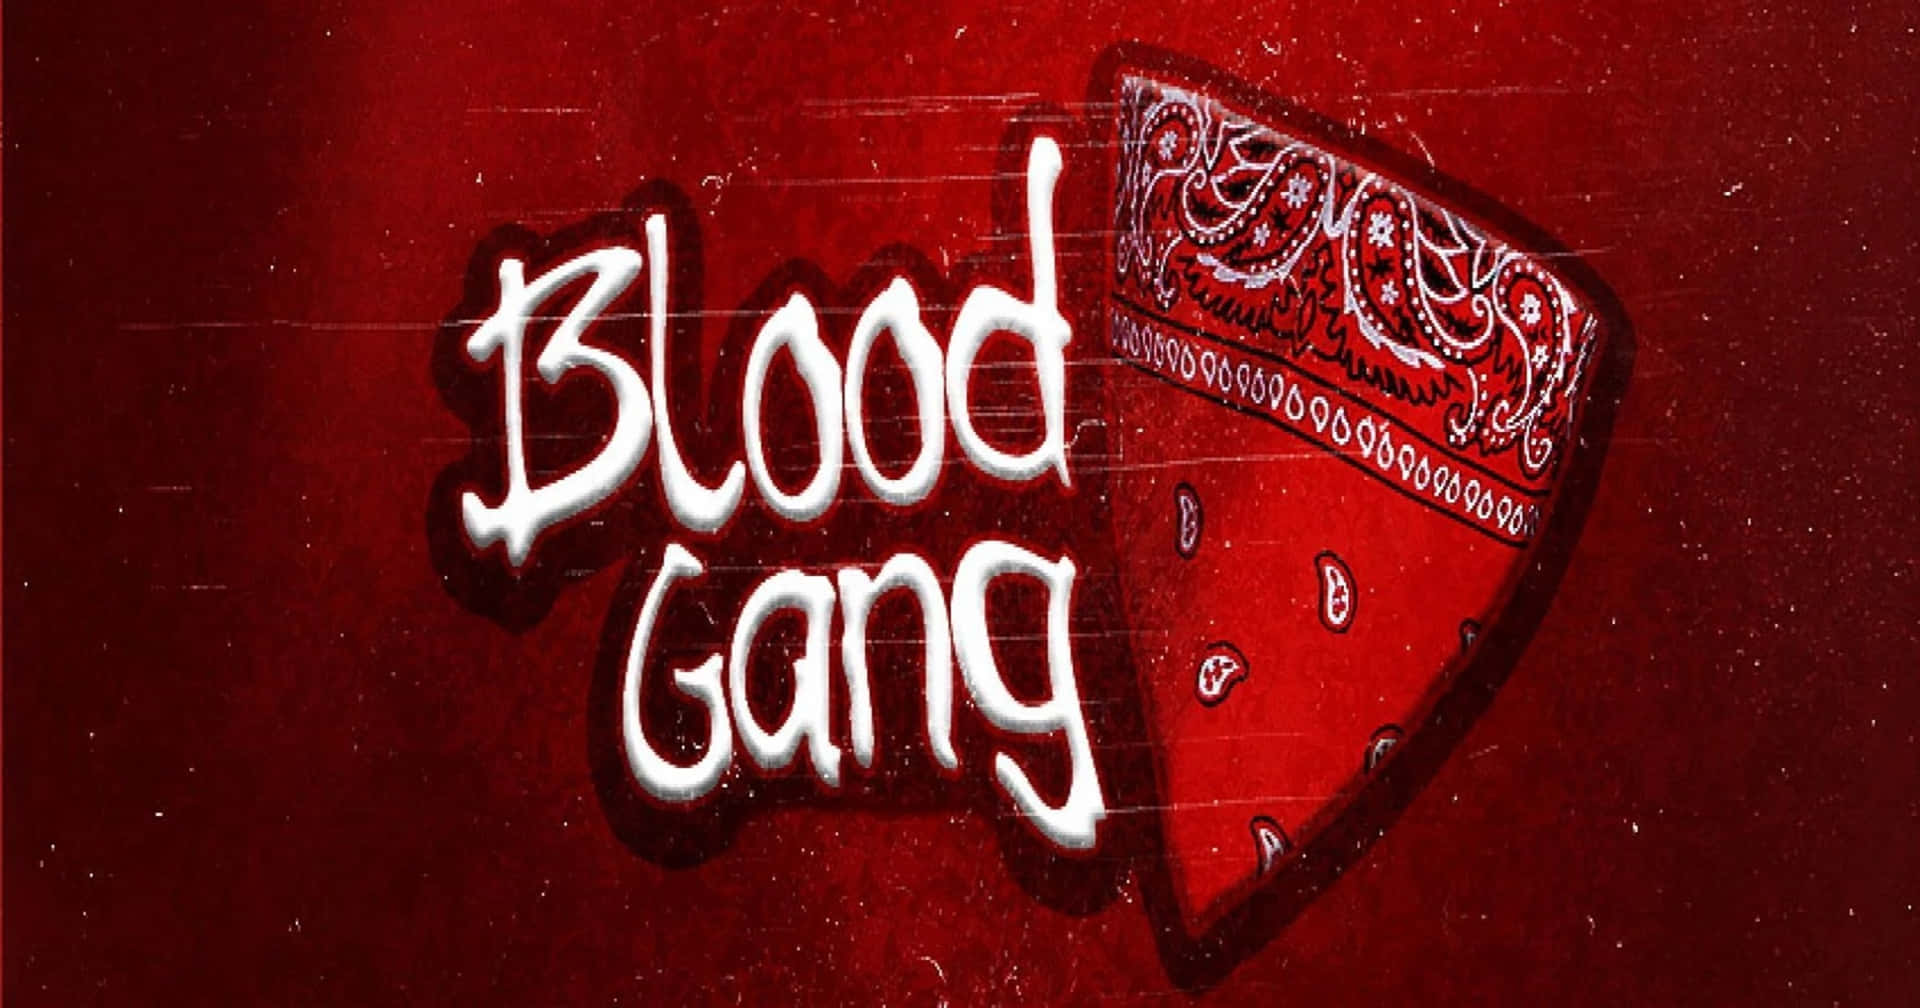 Arteurbano De La Banda Blood Gang Con Bandana. Fondo de pantalla